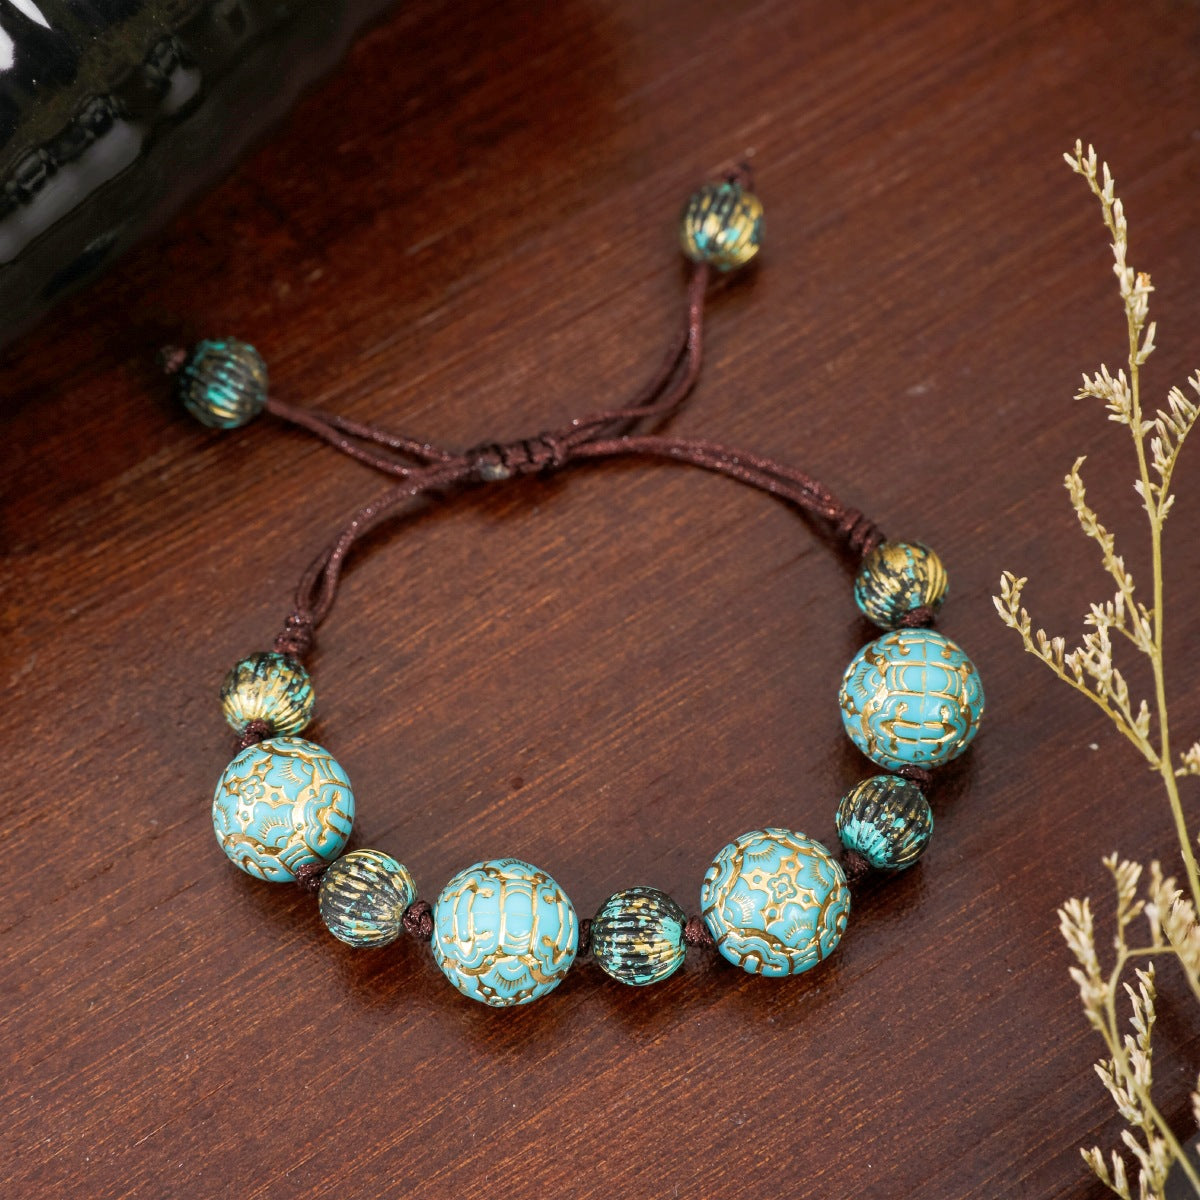 Ethnic Style Geometric Arylic Rope Handmade Women's Bracelets Necklace